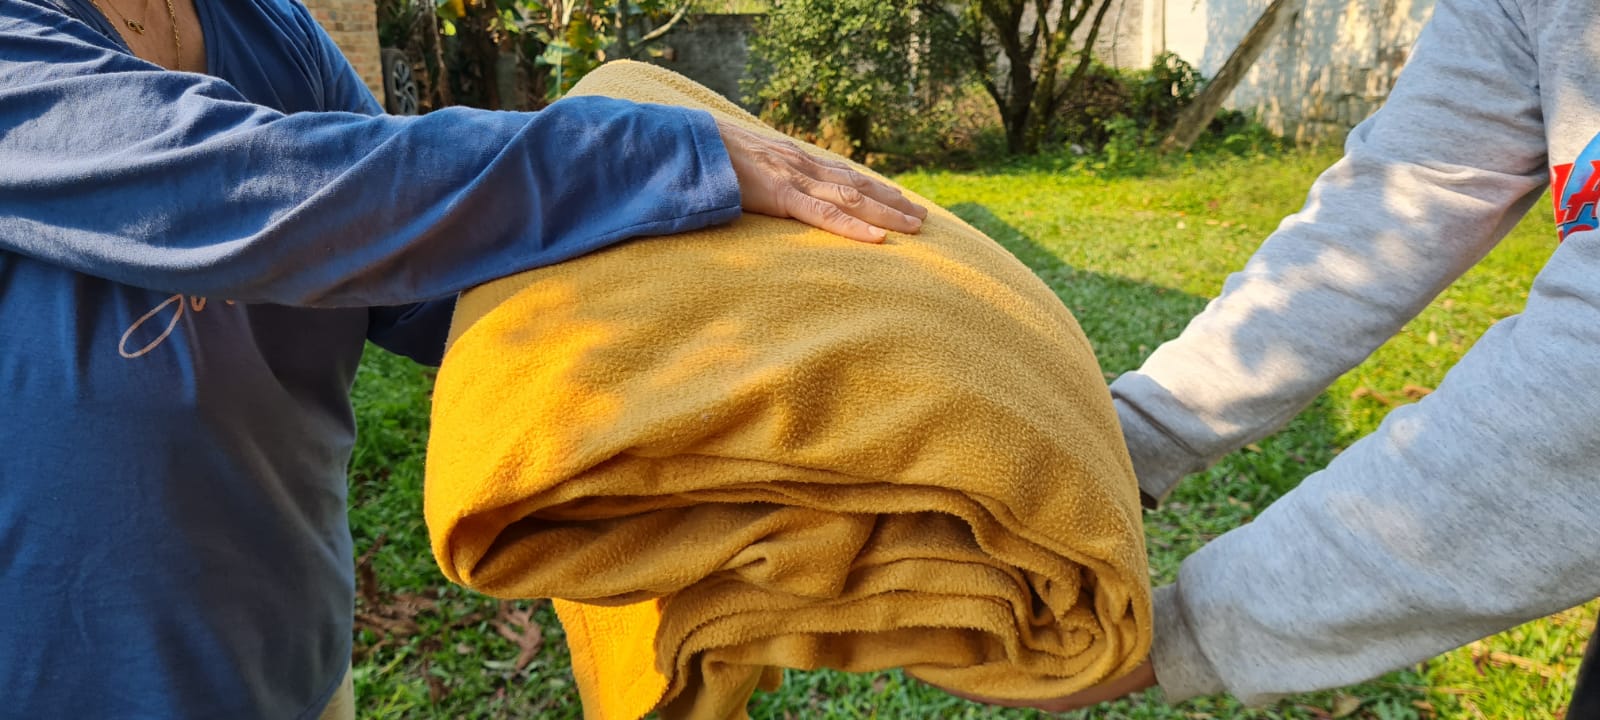 Com a previsão de retorno do frio intenso, Prefeitura de Gravataí reforça pedido por doações de cobertores